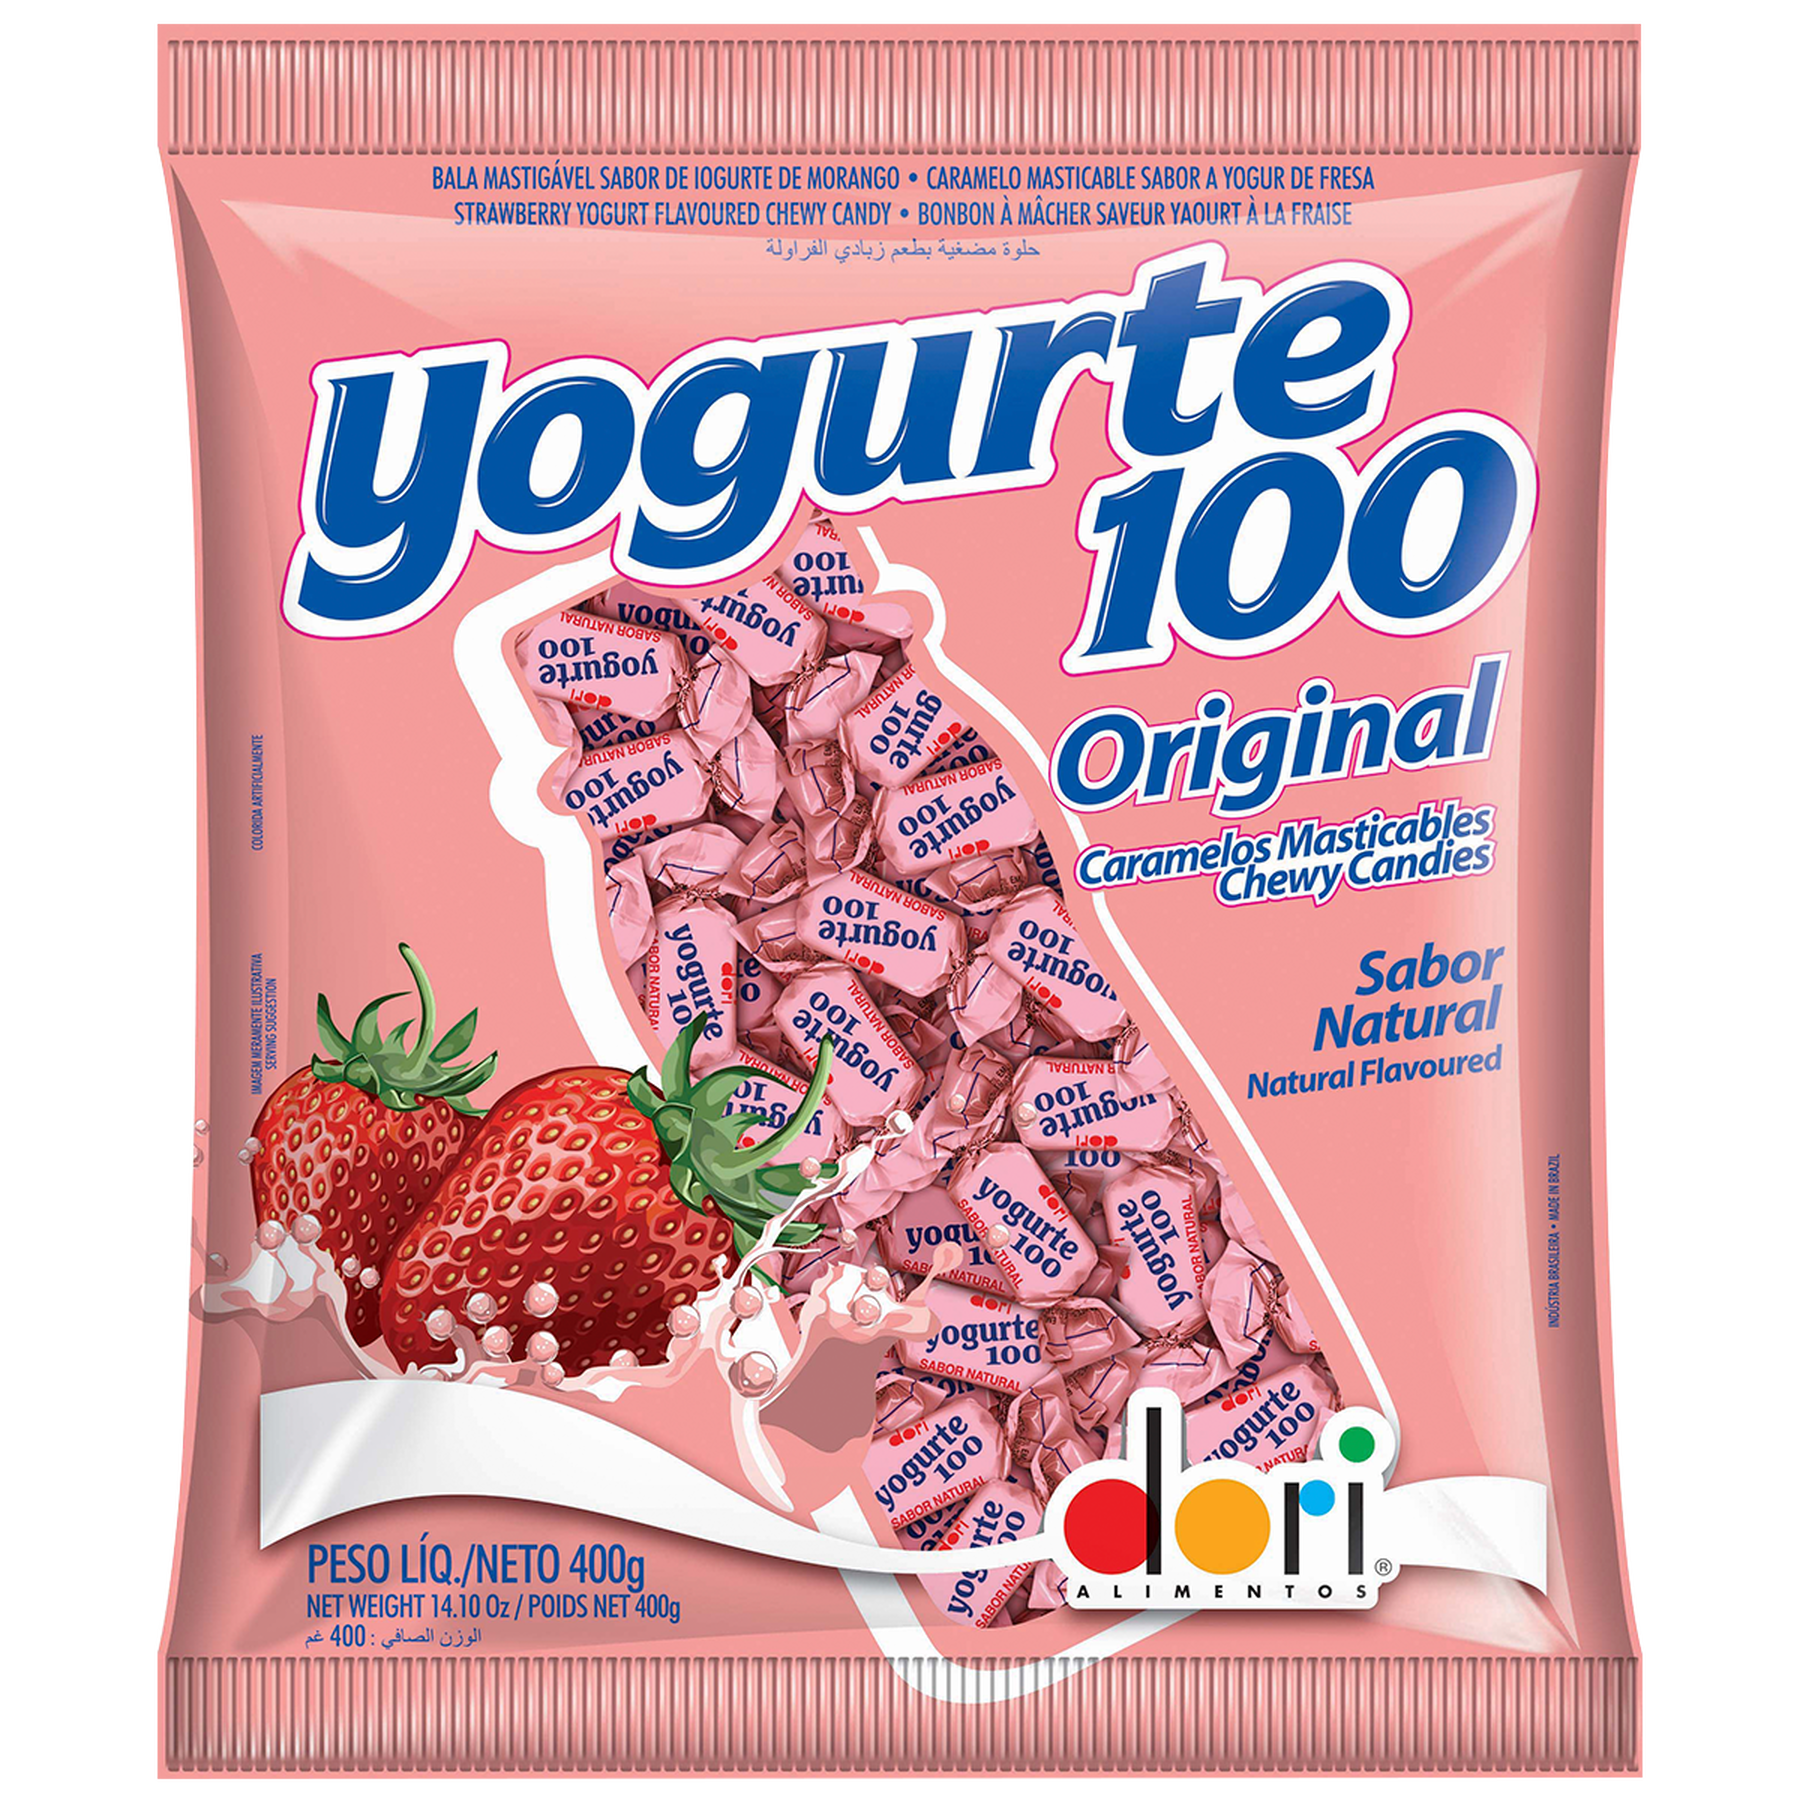 Bala Mastigável Yogurte 100 de Morango Original Dori 400g